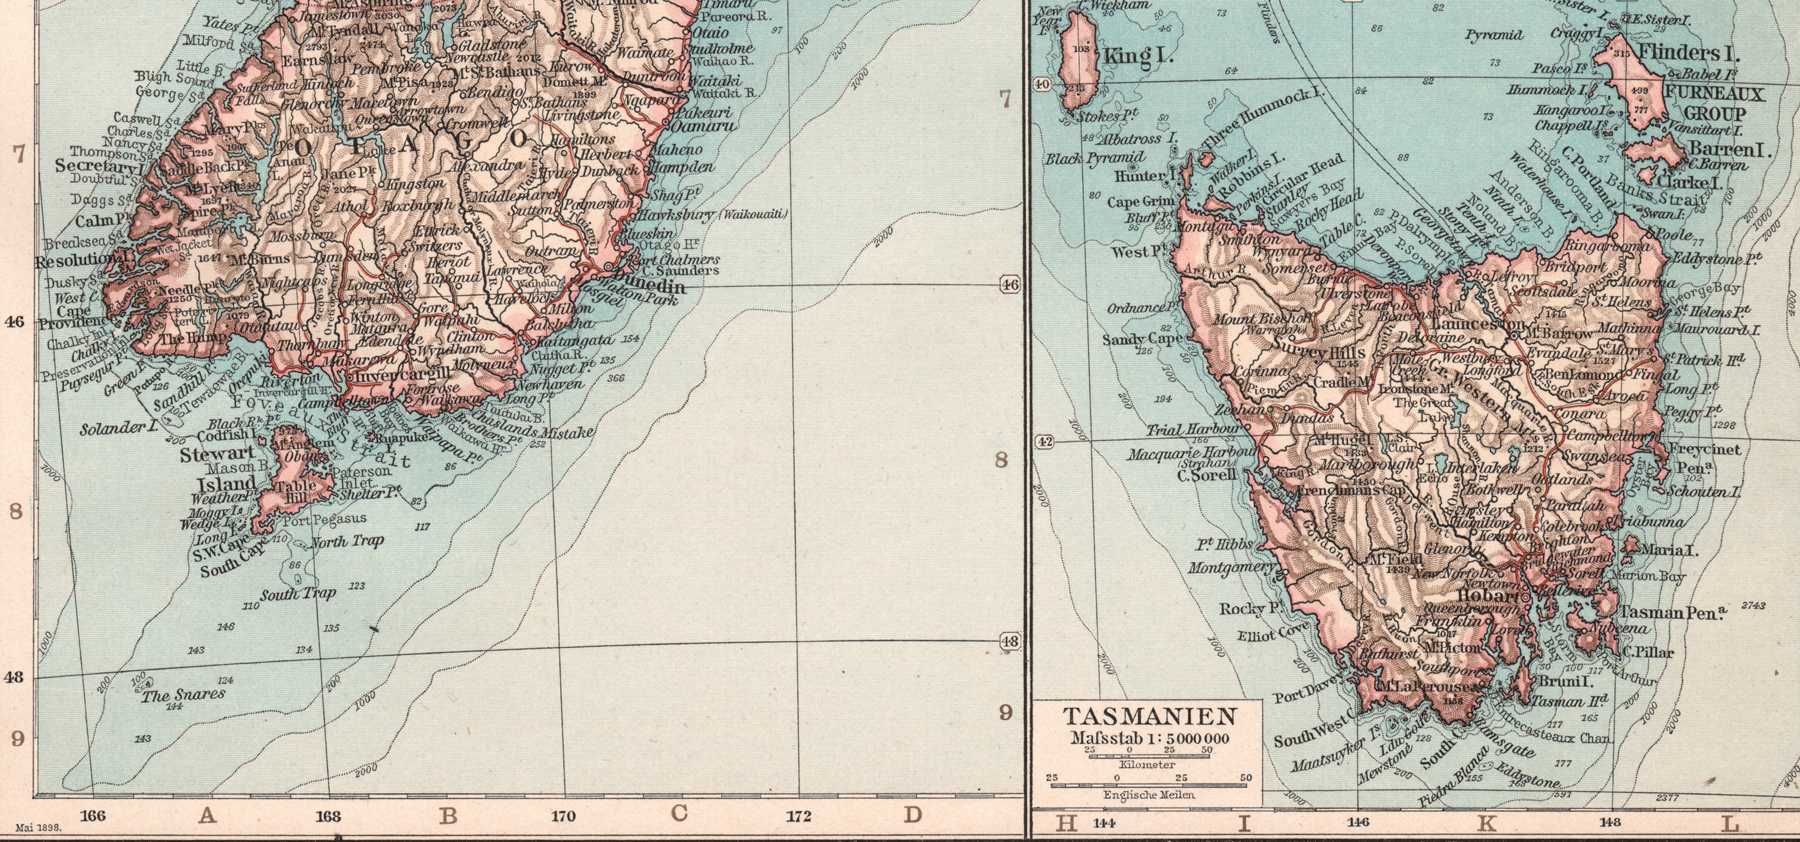 Nowa Zelandia Tasmania stara mapa 1905 r. autentyk